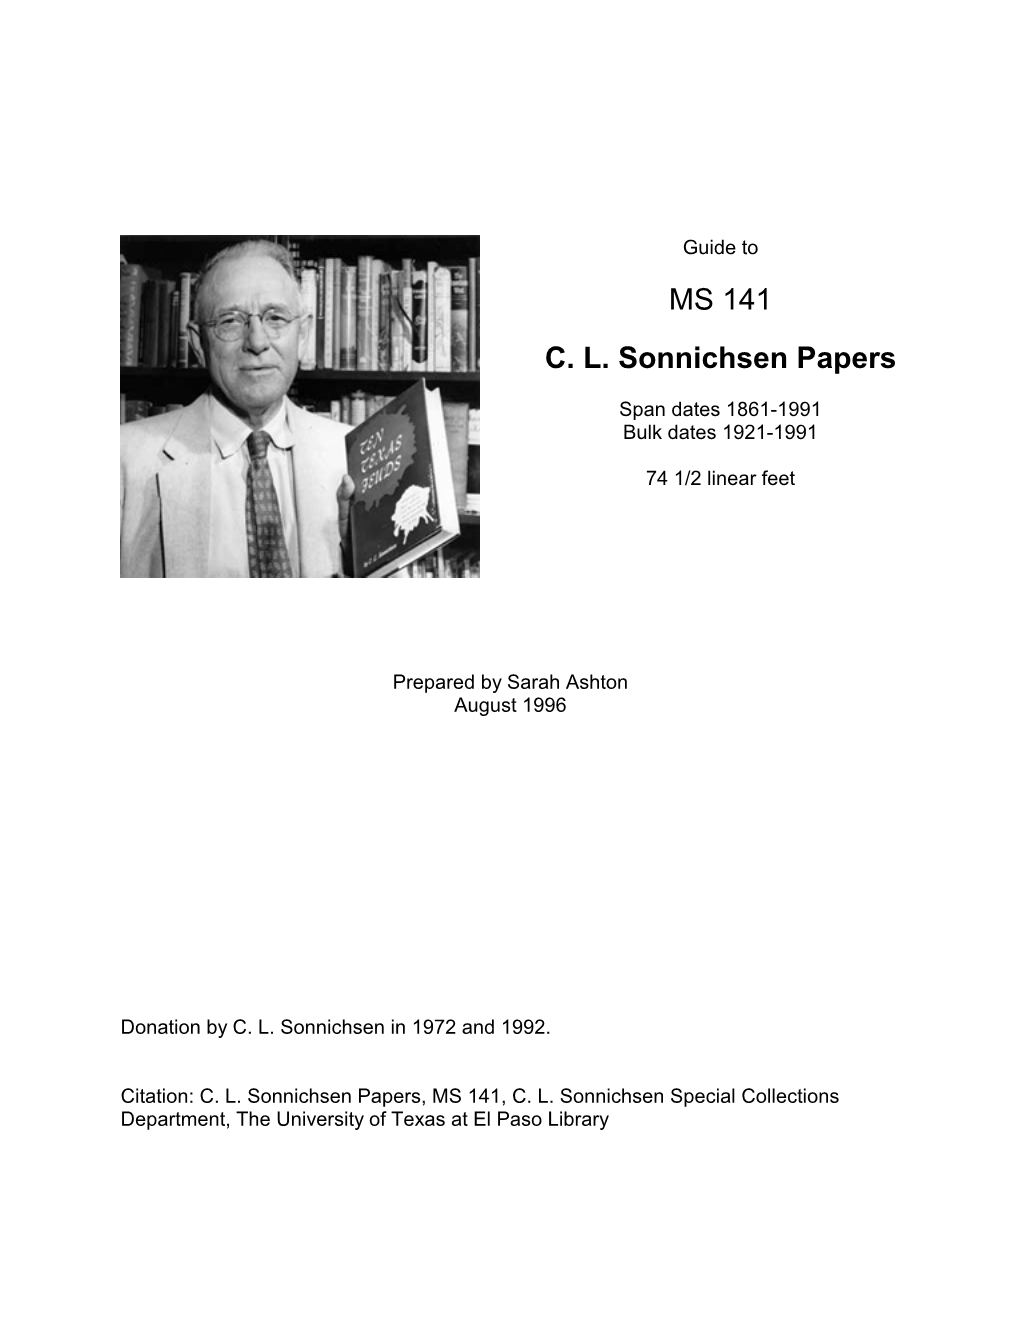 C.L. Sonnichsen Papers, MS